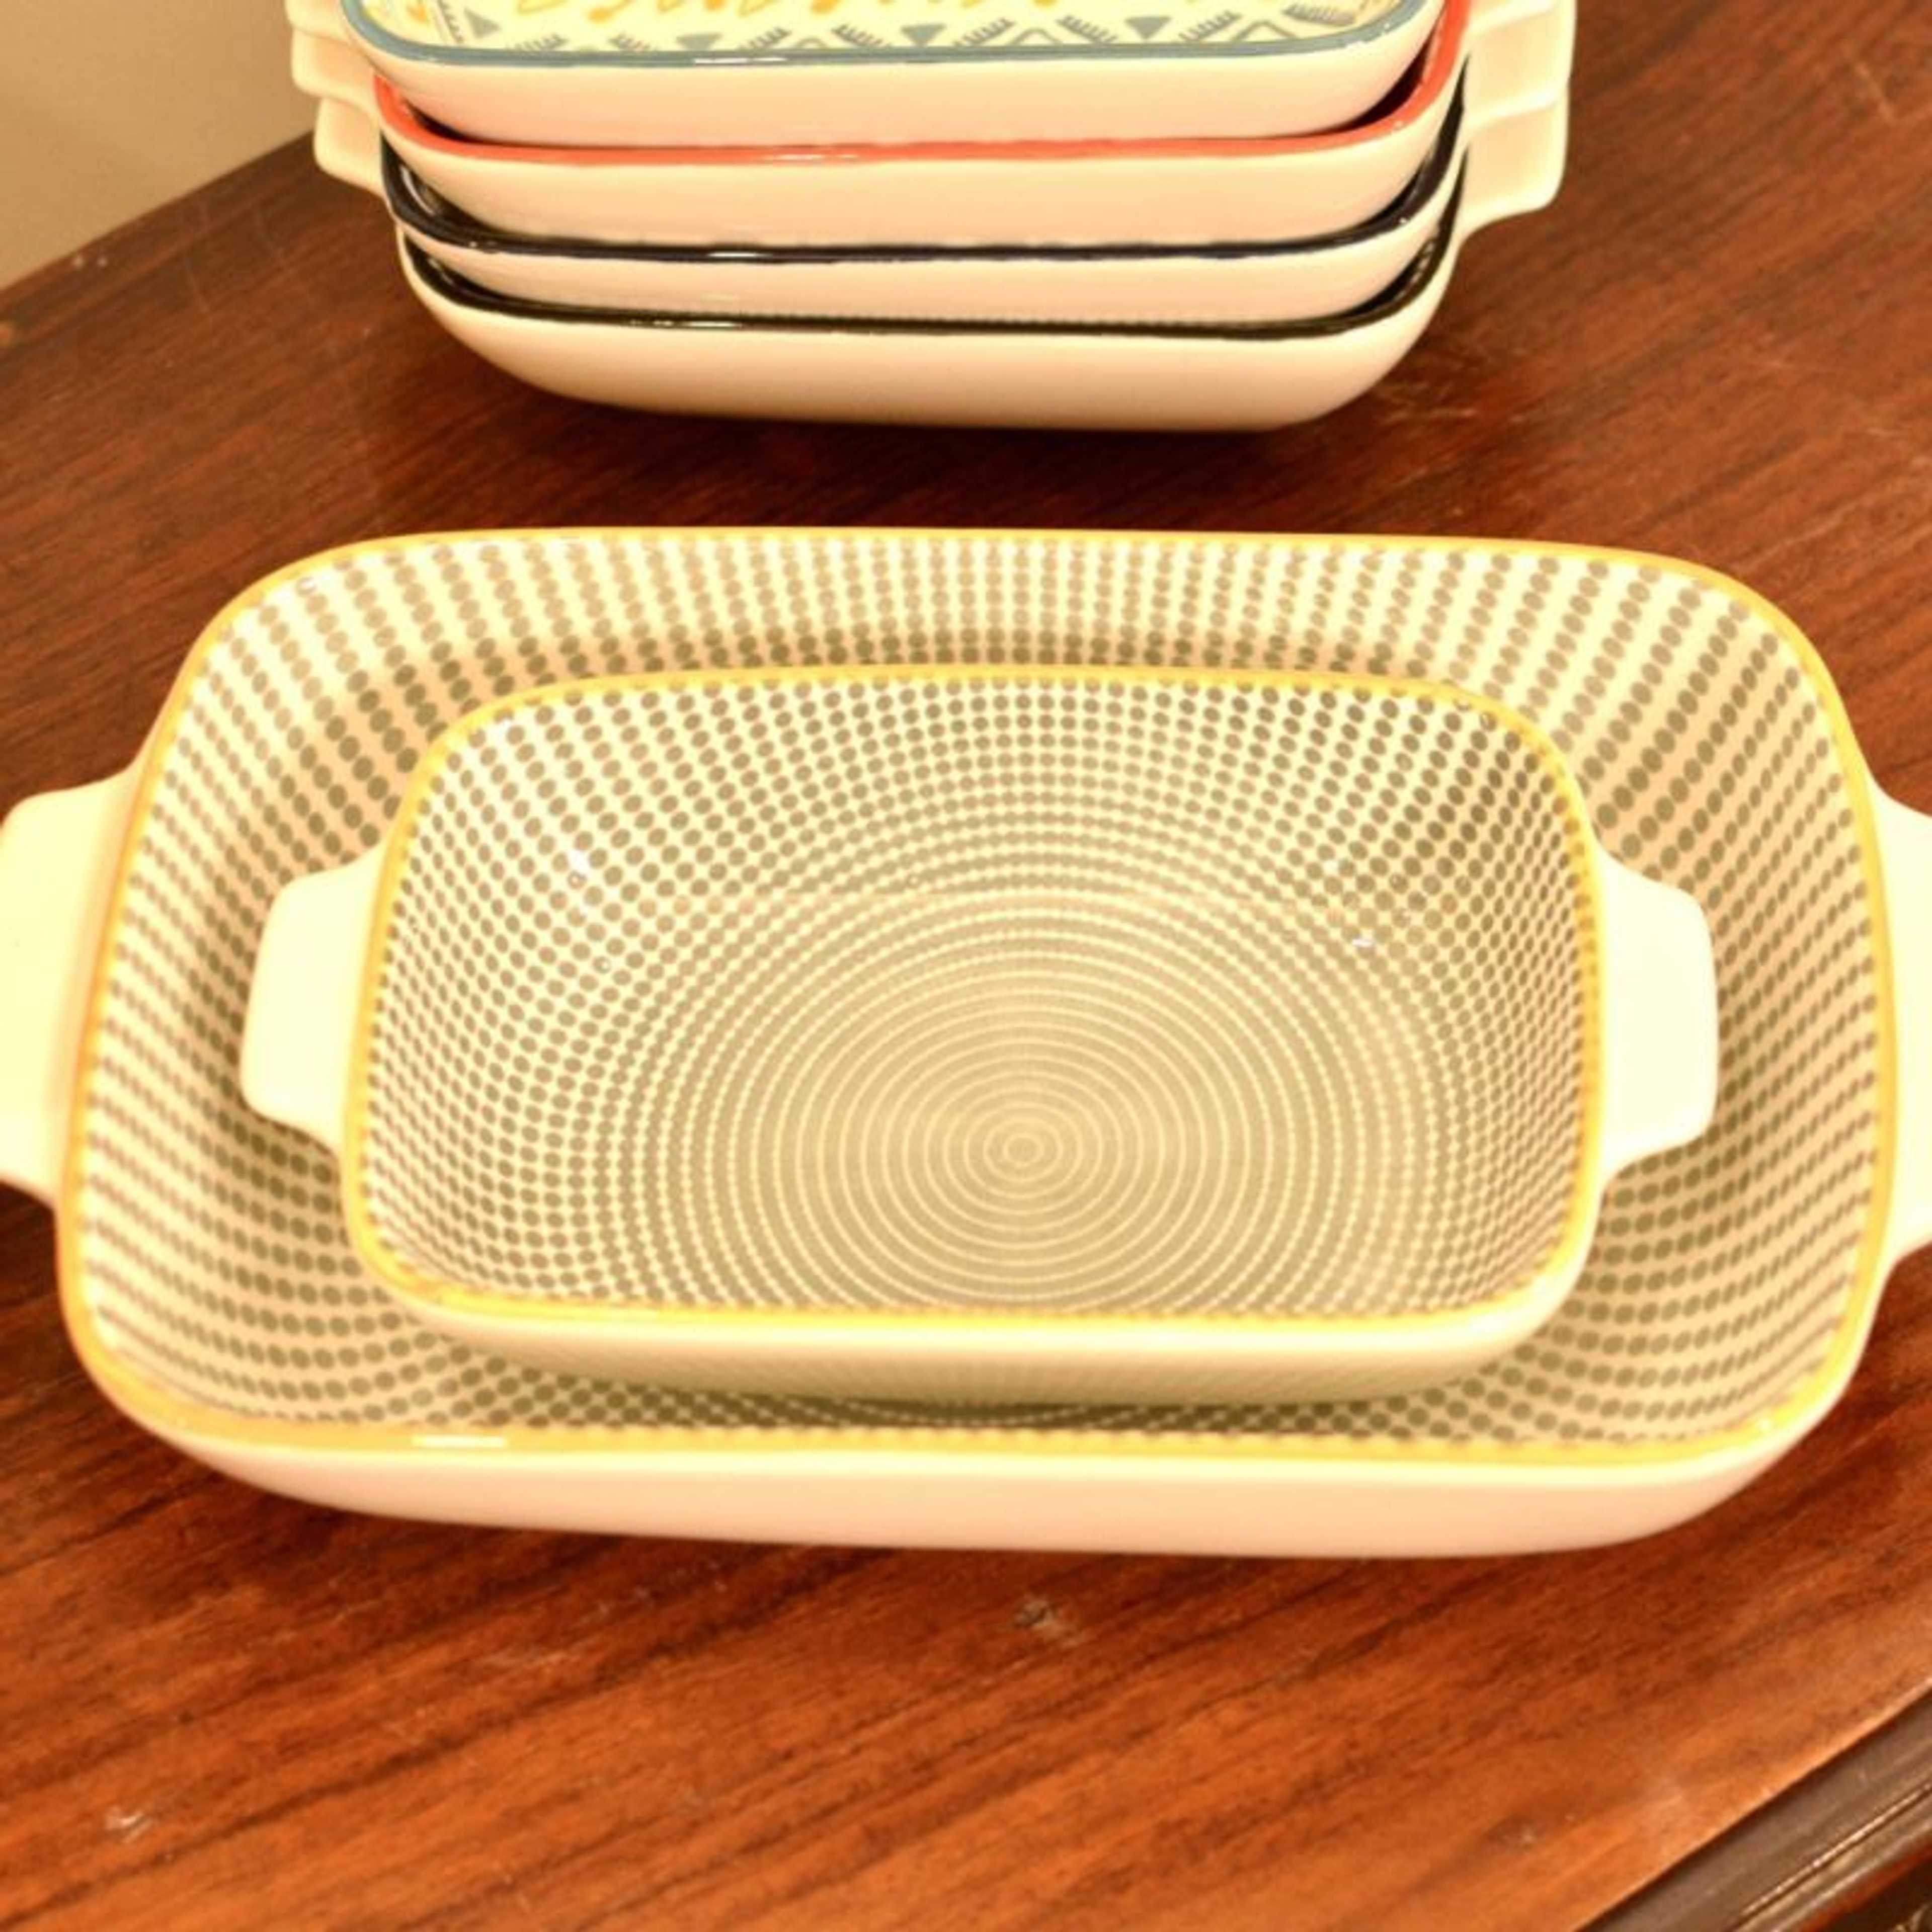 Ceramic Casserole Baking Dish Set - Yellow N Grey Bakeware Sets Lasagna Pan Baking Dishes Baking Pan